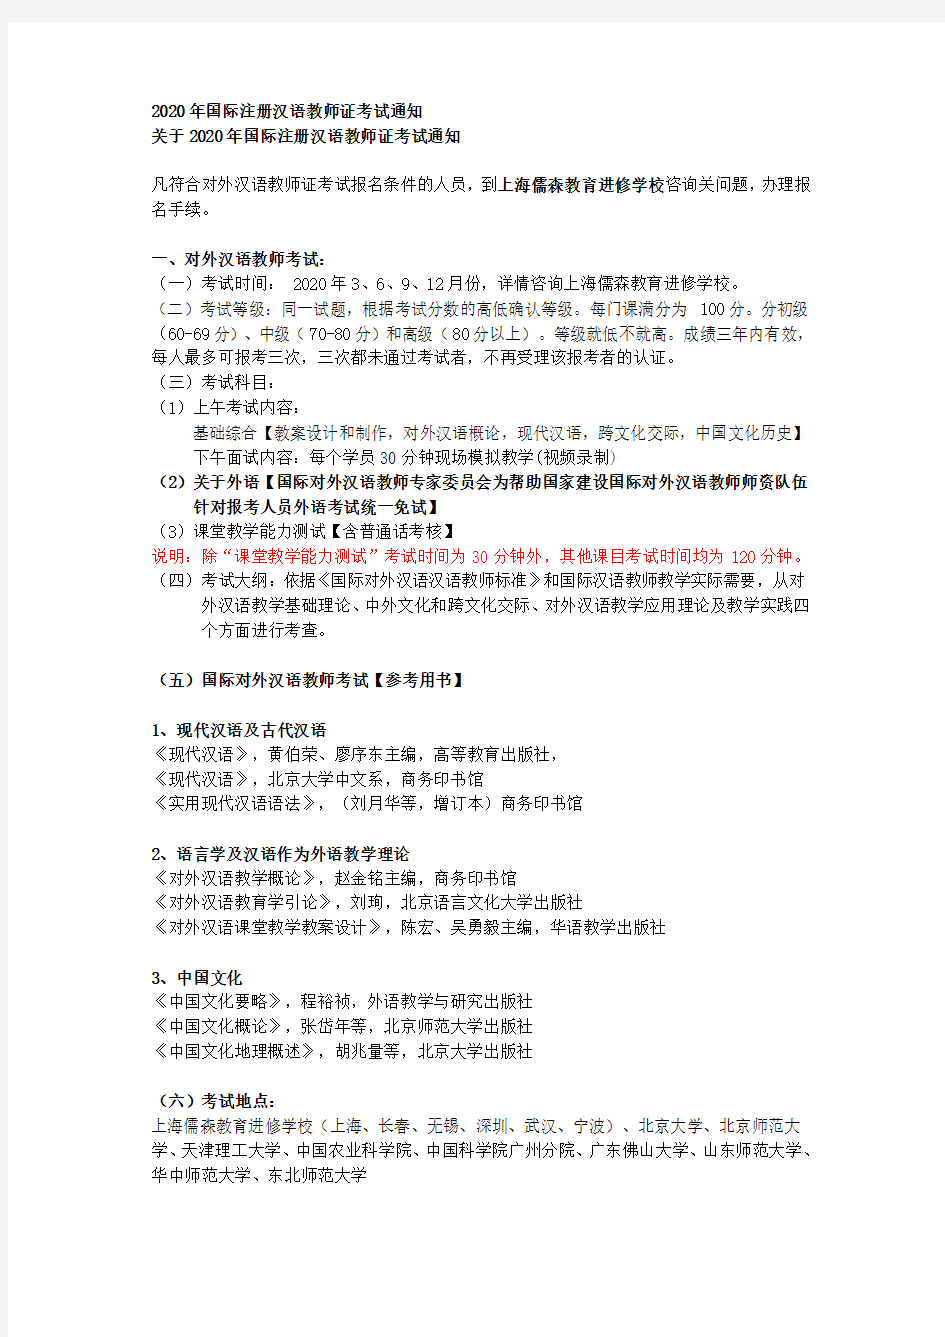 2020年国际注册汉语教师证考试通知